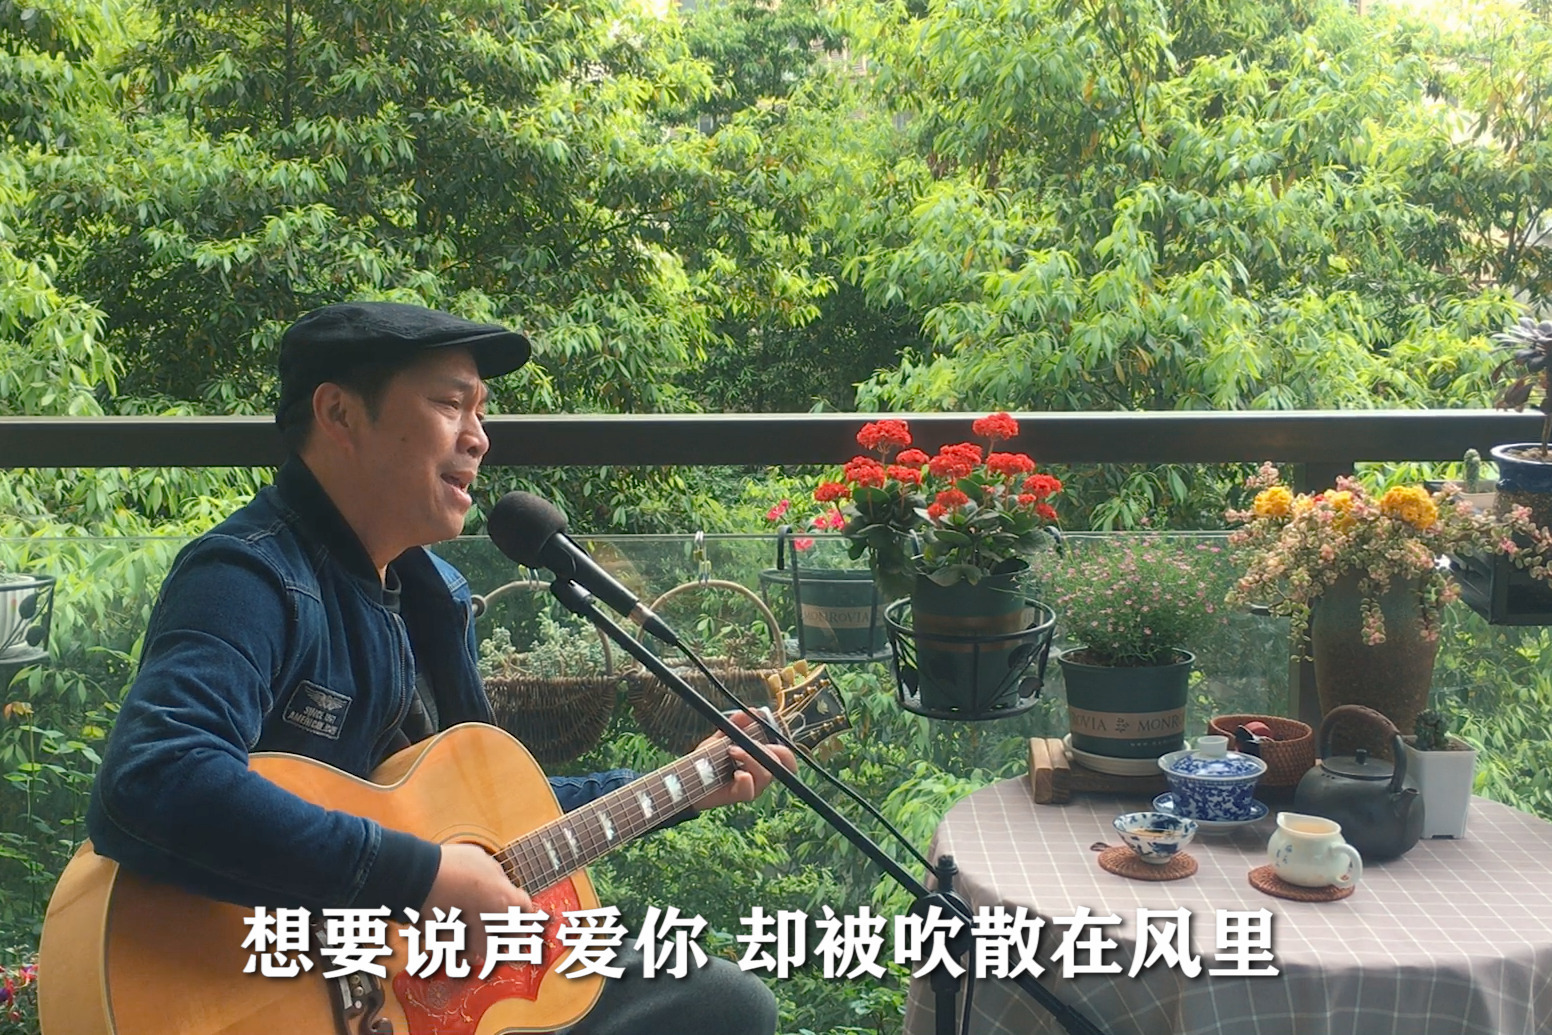 ‎張雨生在 Apple Music 上的《卡拉OK.台北.我》